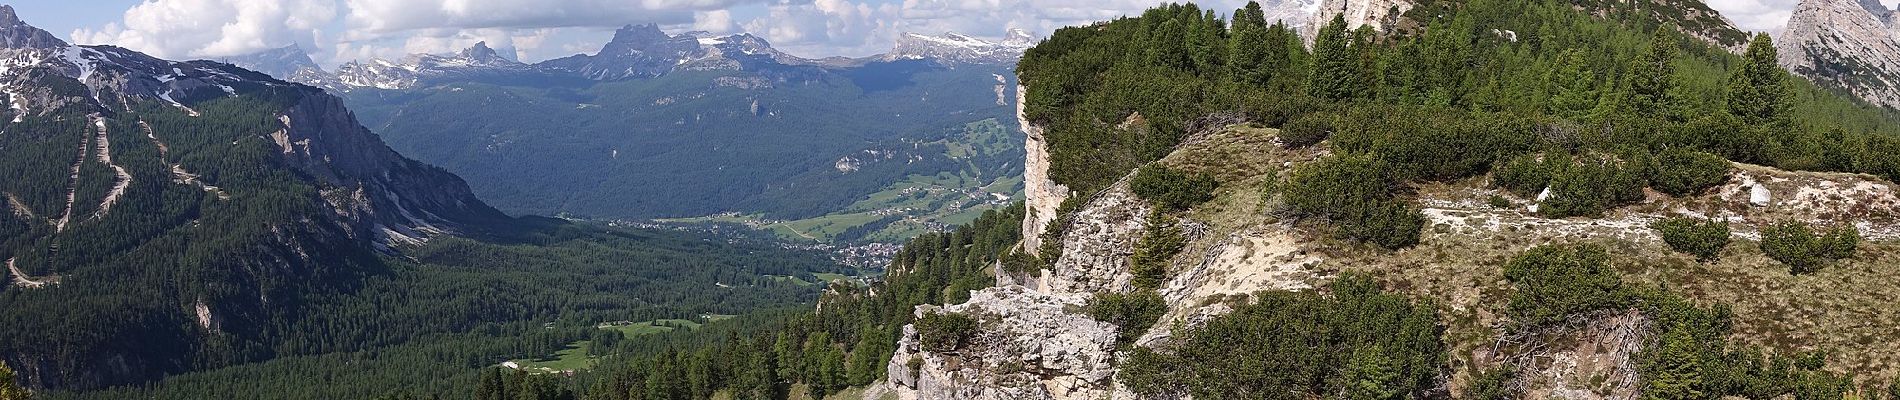 Randonnée A pied Cortina d'Ampezzo - Sentiero C.A.I. 206, Strada per Tre Croci - Lareto - Son Forca - Photo